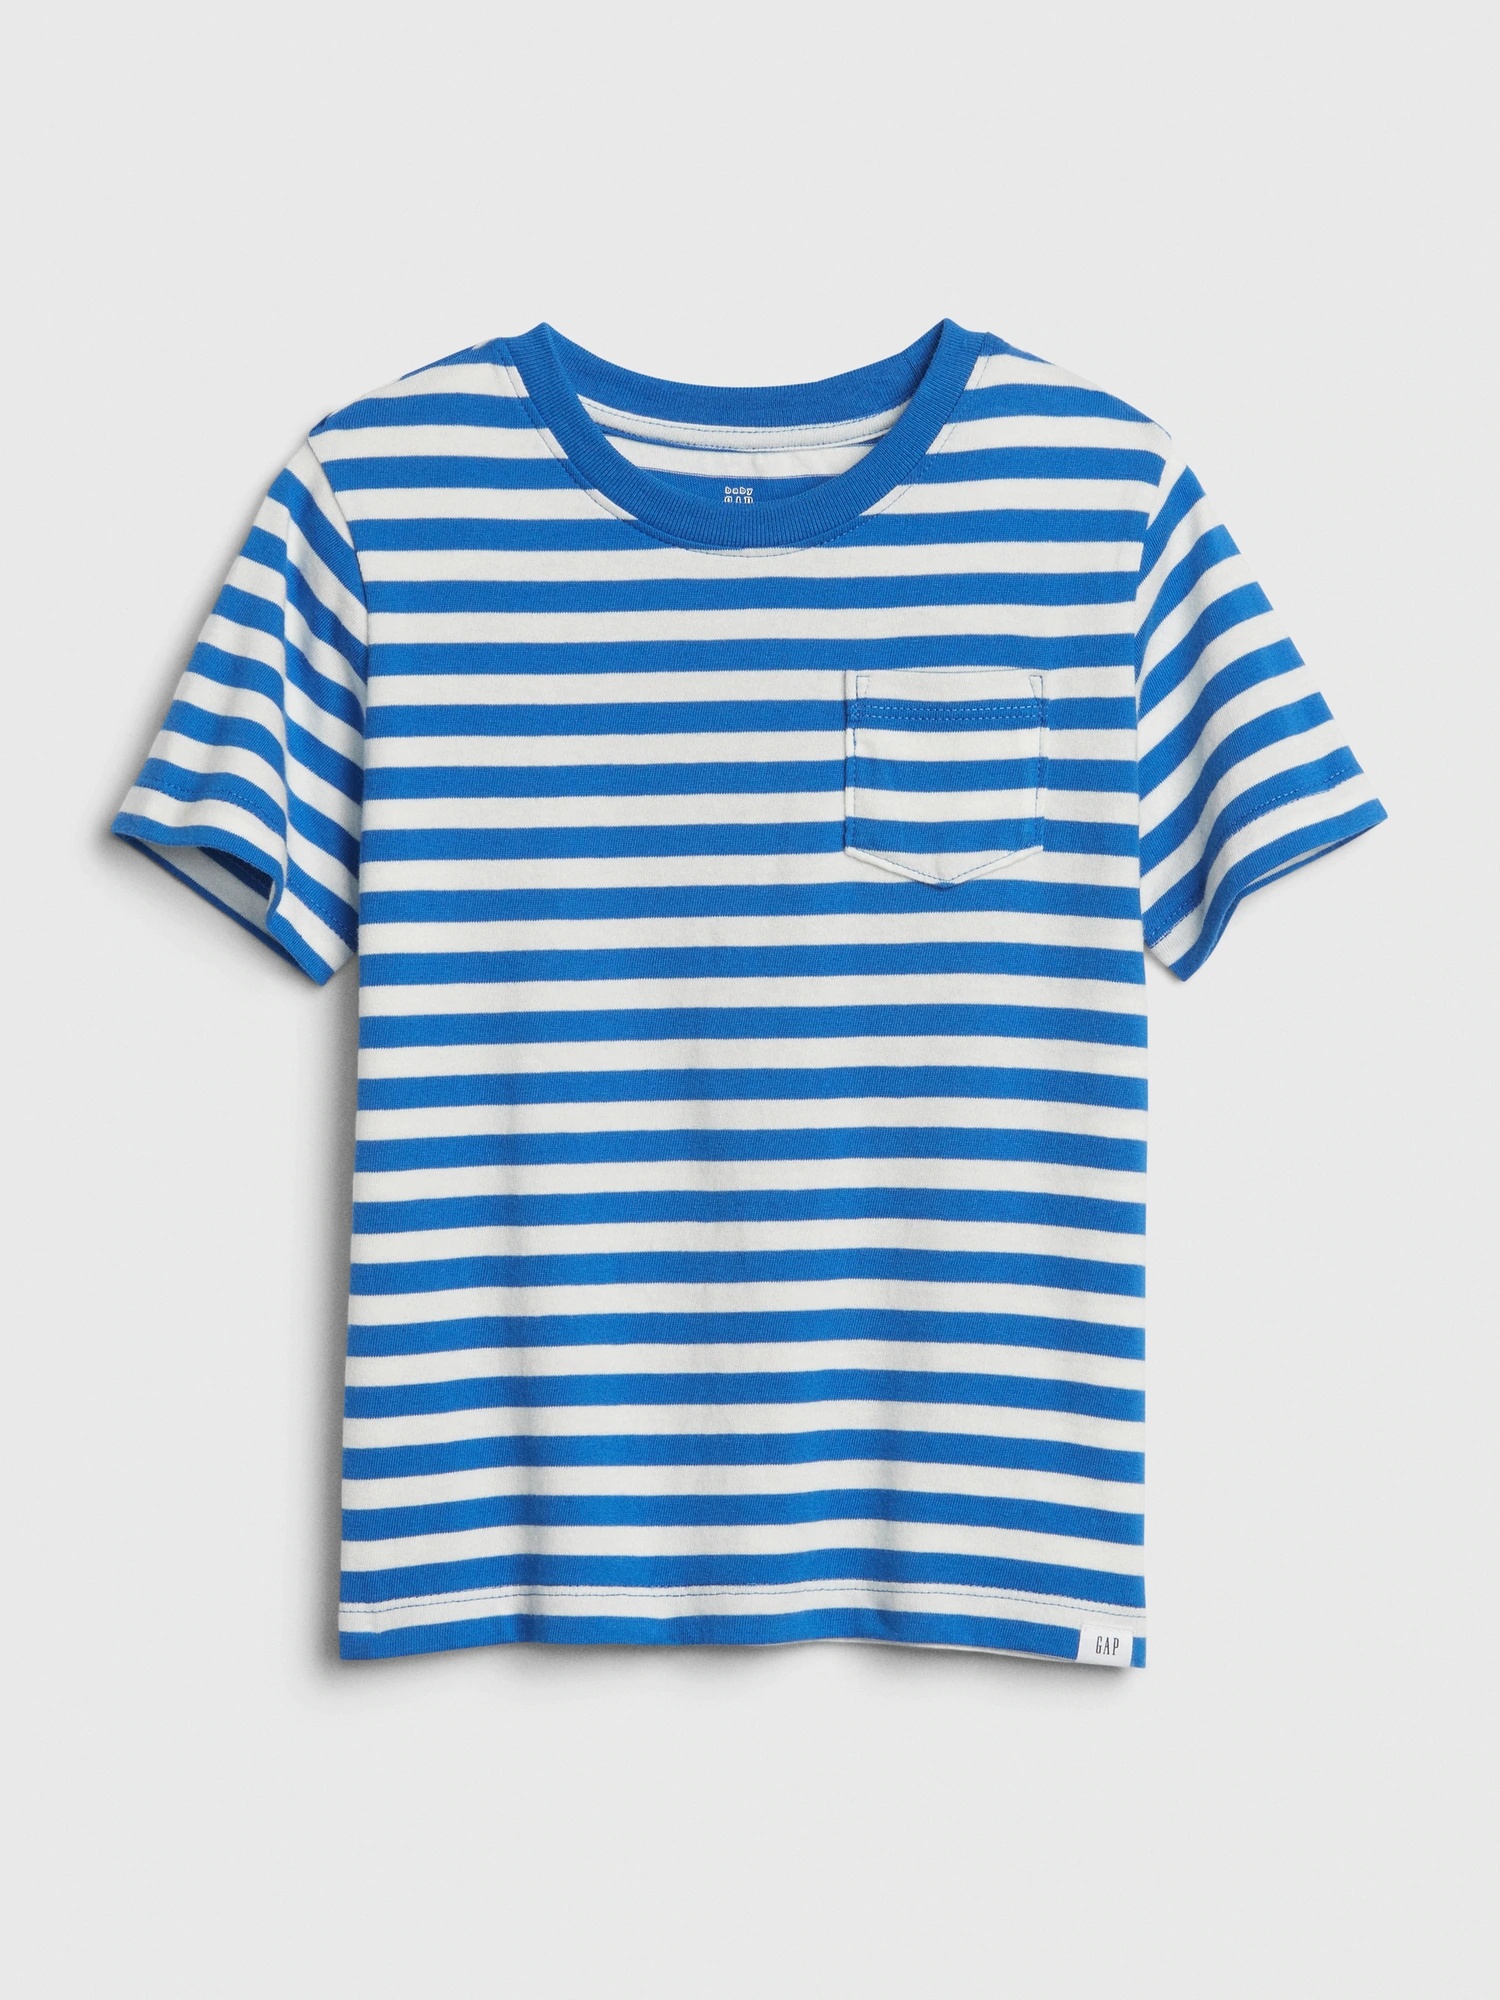 男幼童裝|棉質舒適圓領短袖T恤-藍色條紋